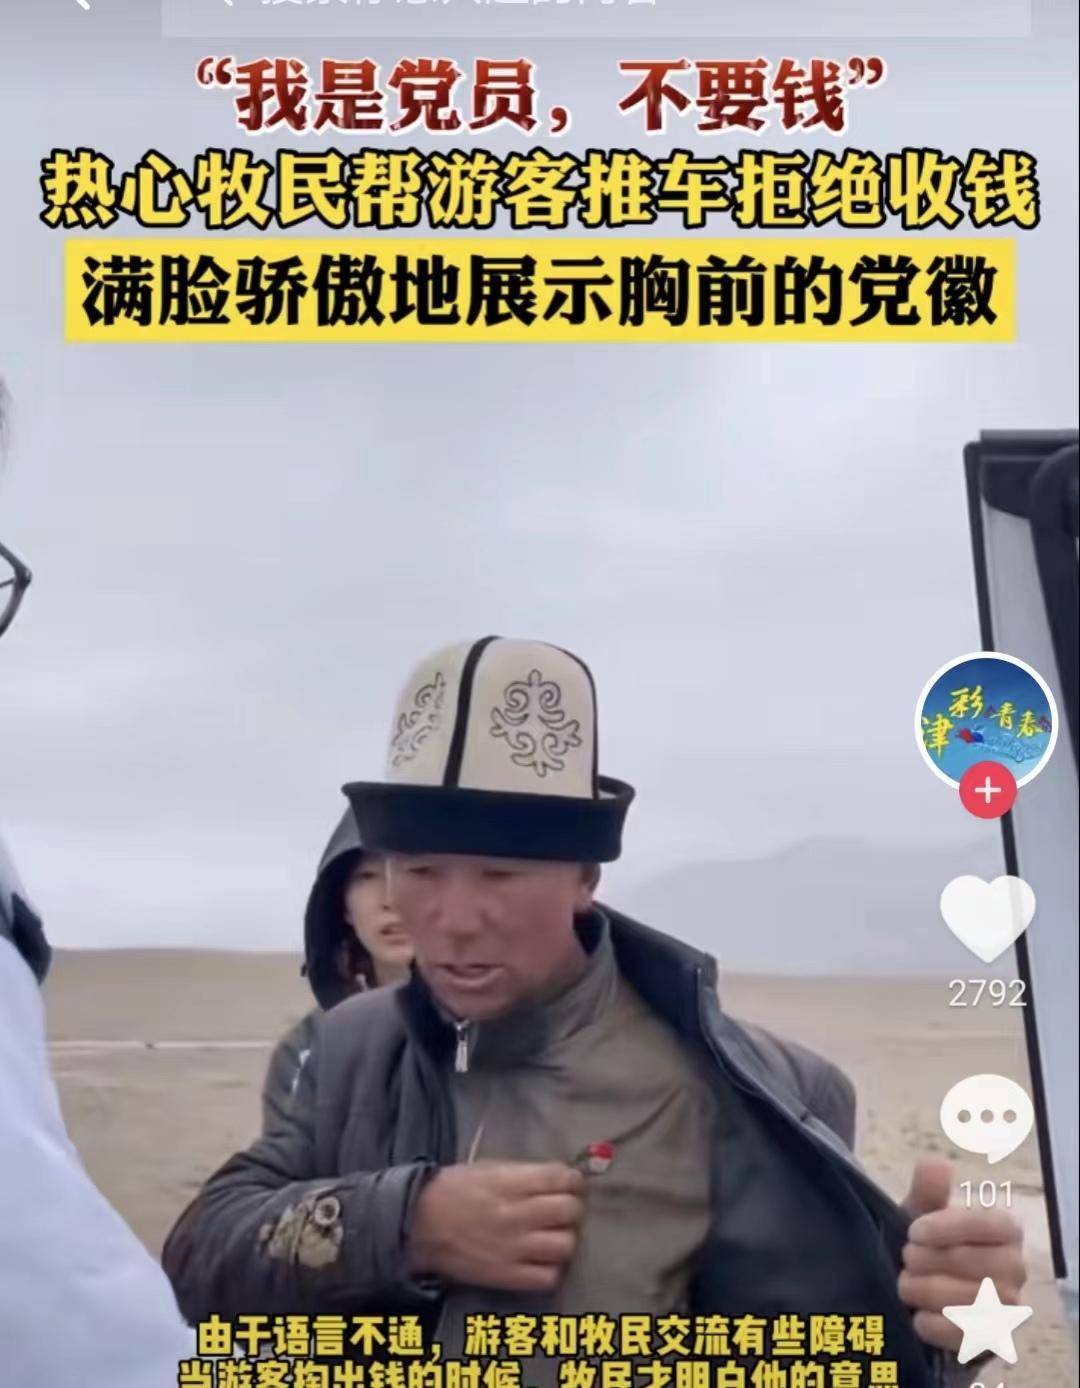 北京天安门:那个帮助推车的新疆党员大叔到北京天安门了北京天安门看升国旗